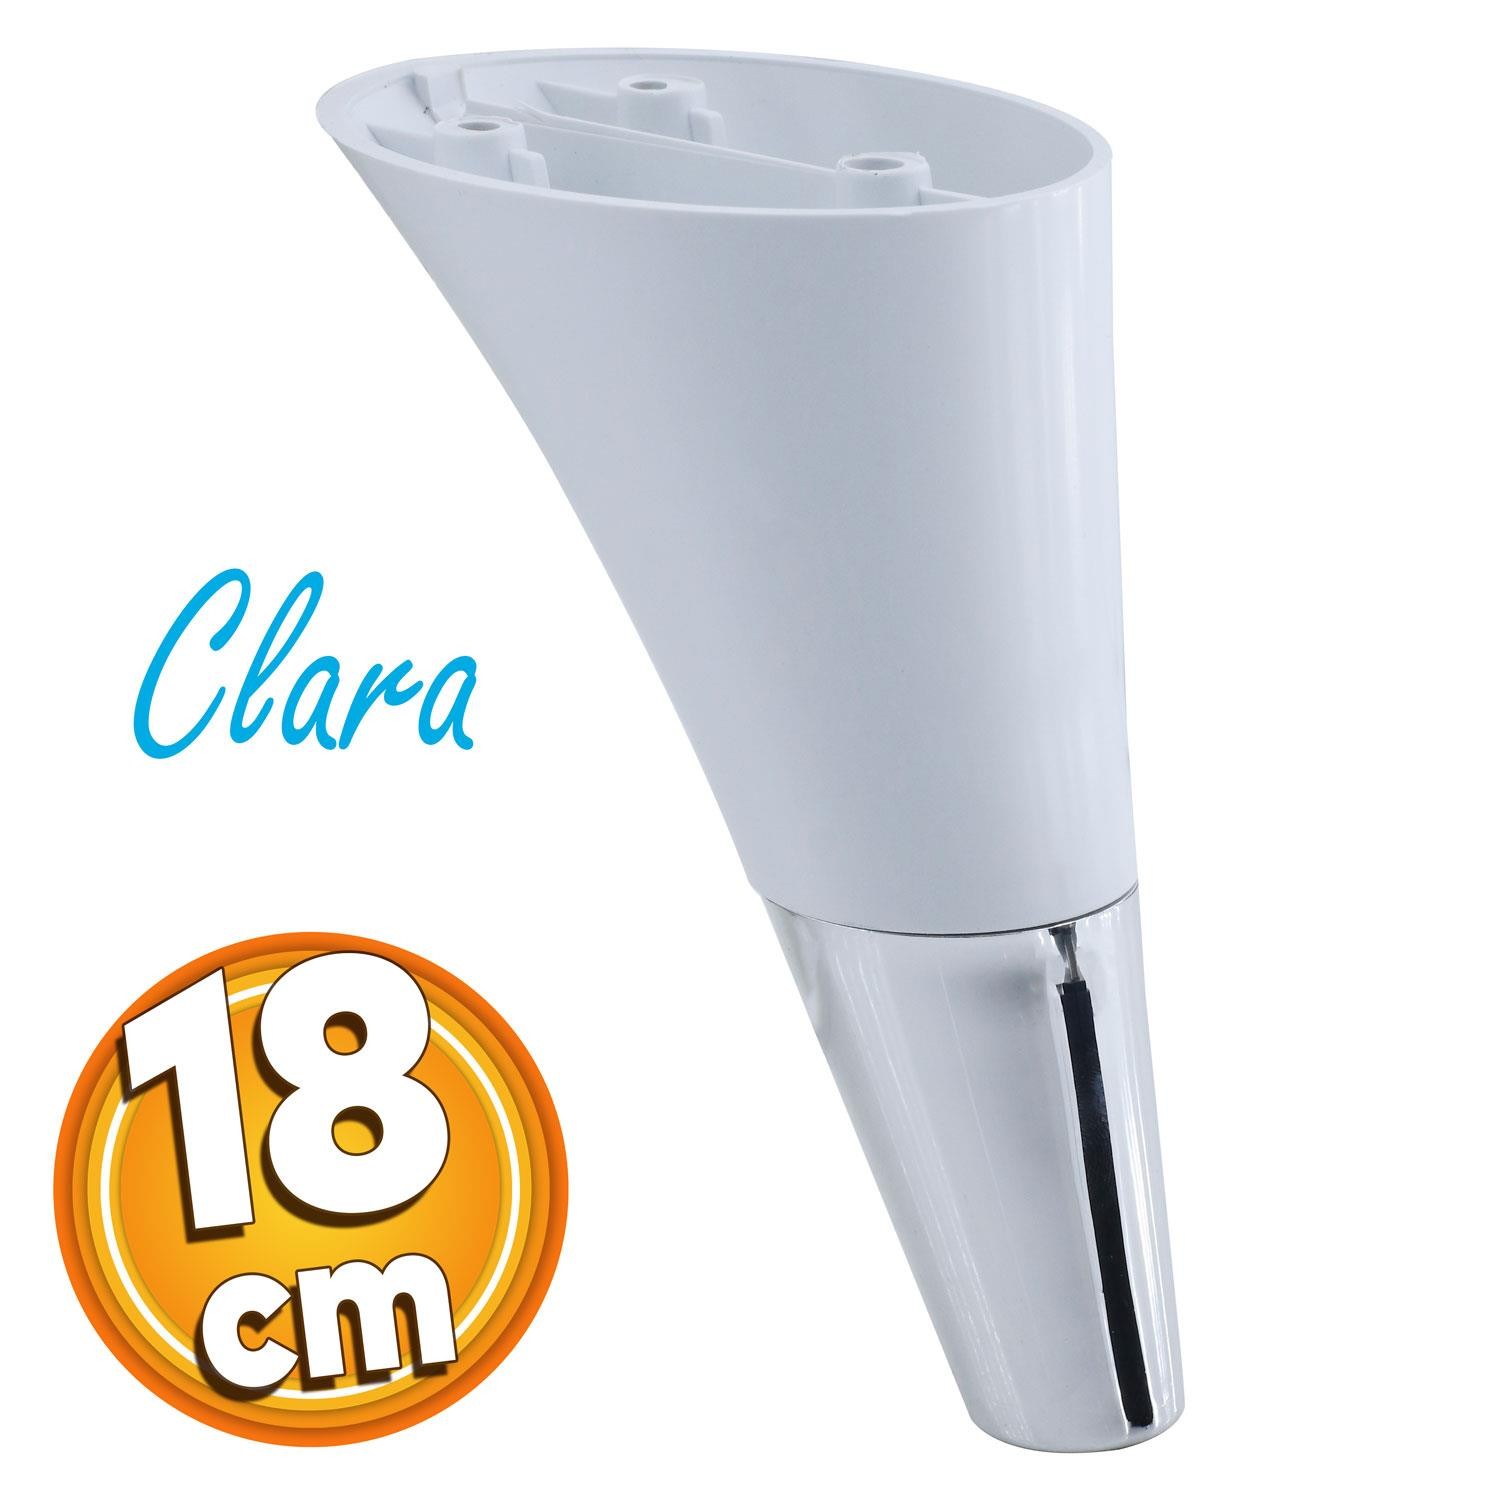 Clara Mobilya Kanepe Sehpa TV Ünitesi Baza Koltuk Ayağı Beyaz Renk 18 cm Ayak